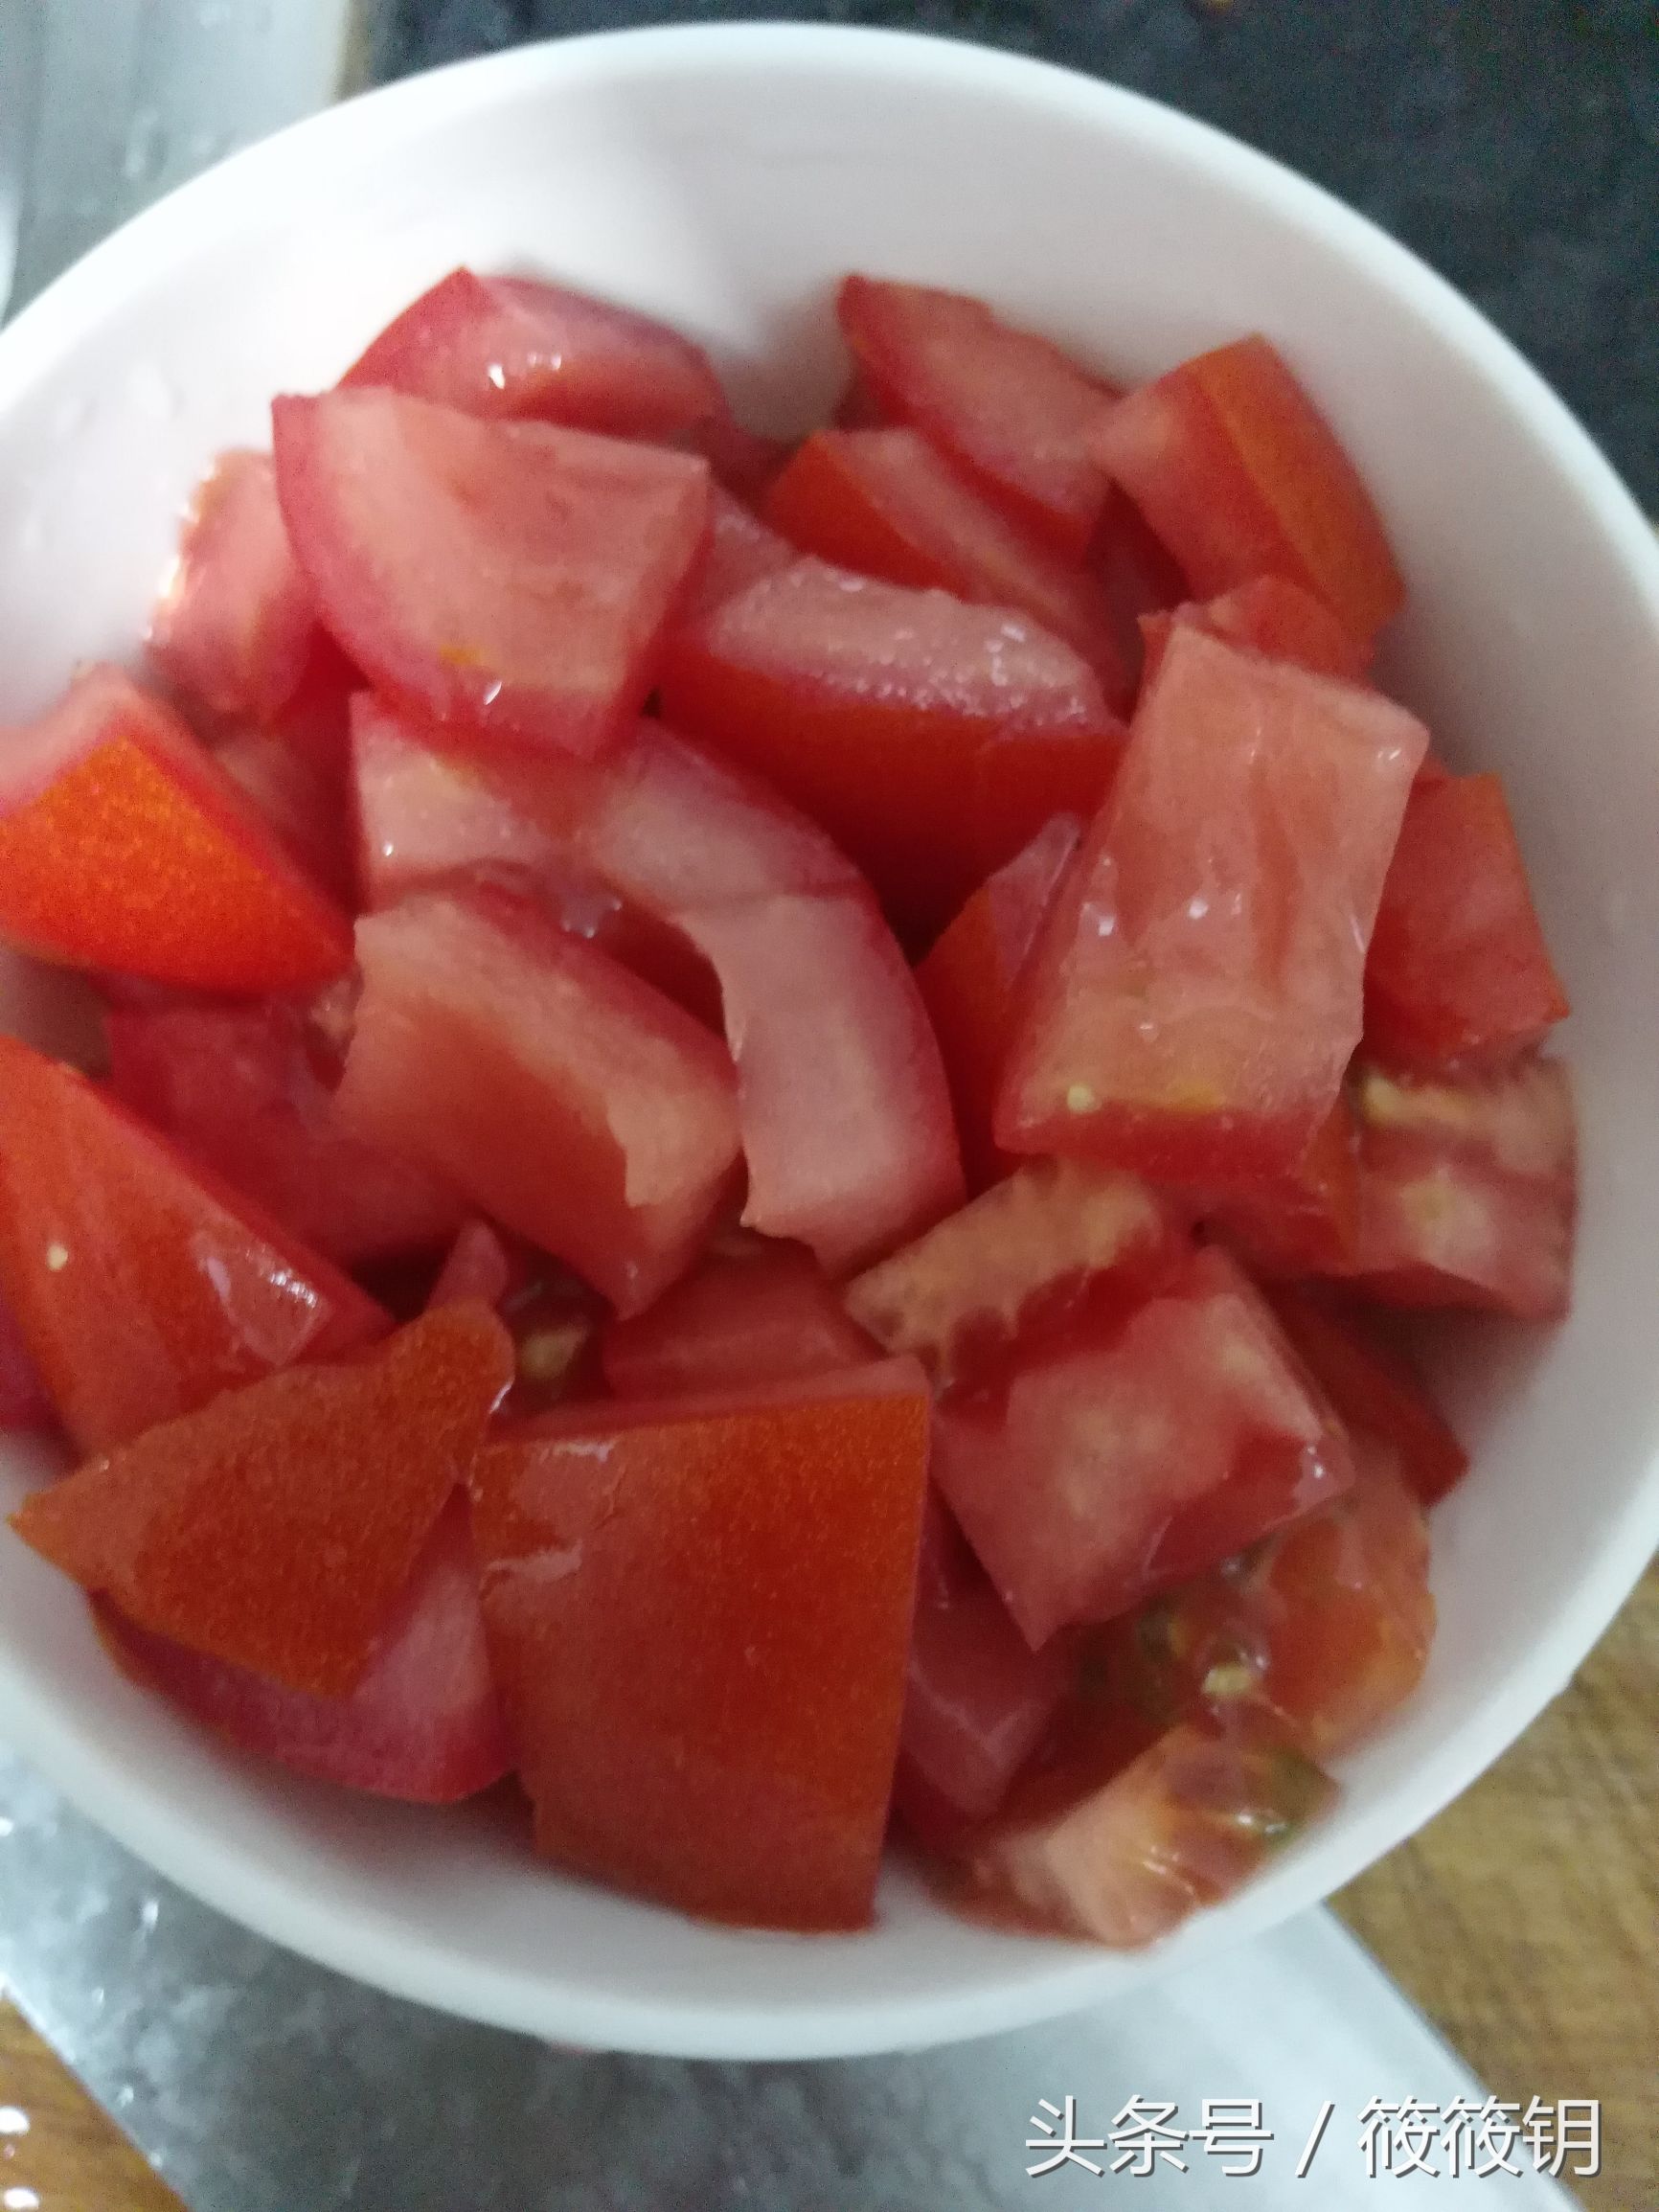 想要煮好一碗好吃好看的番茄蛋花汤，是有技巧的～